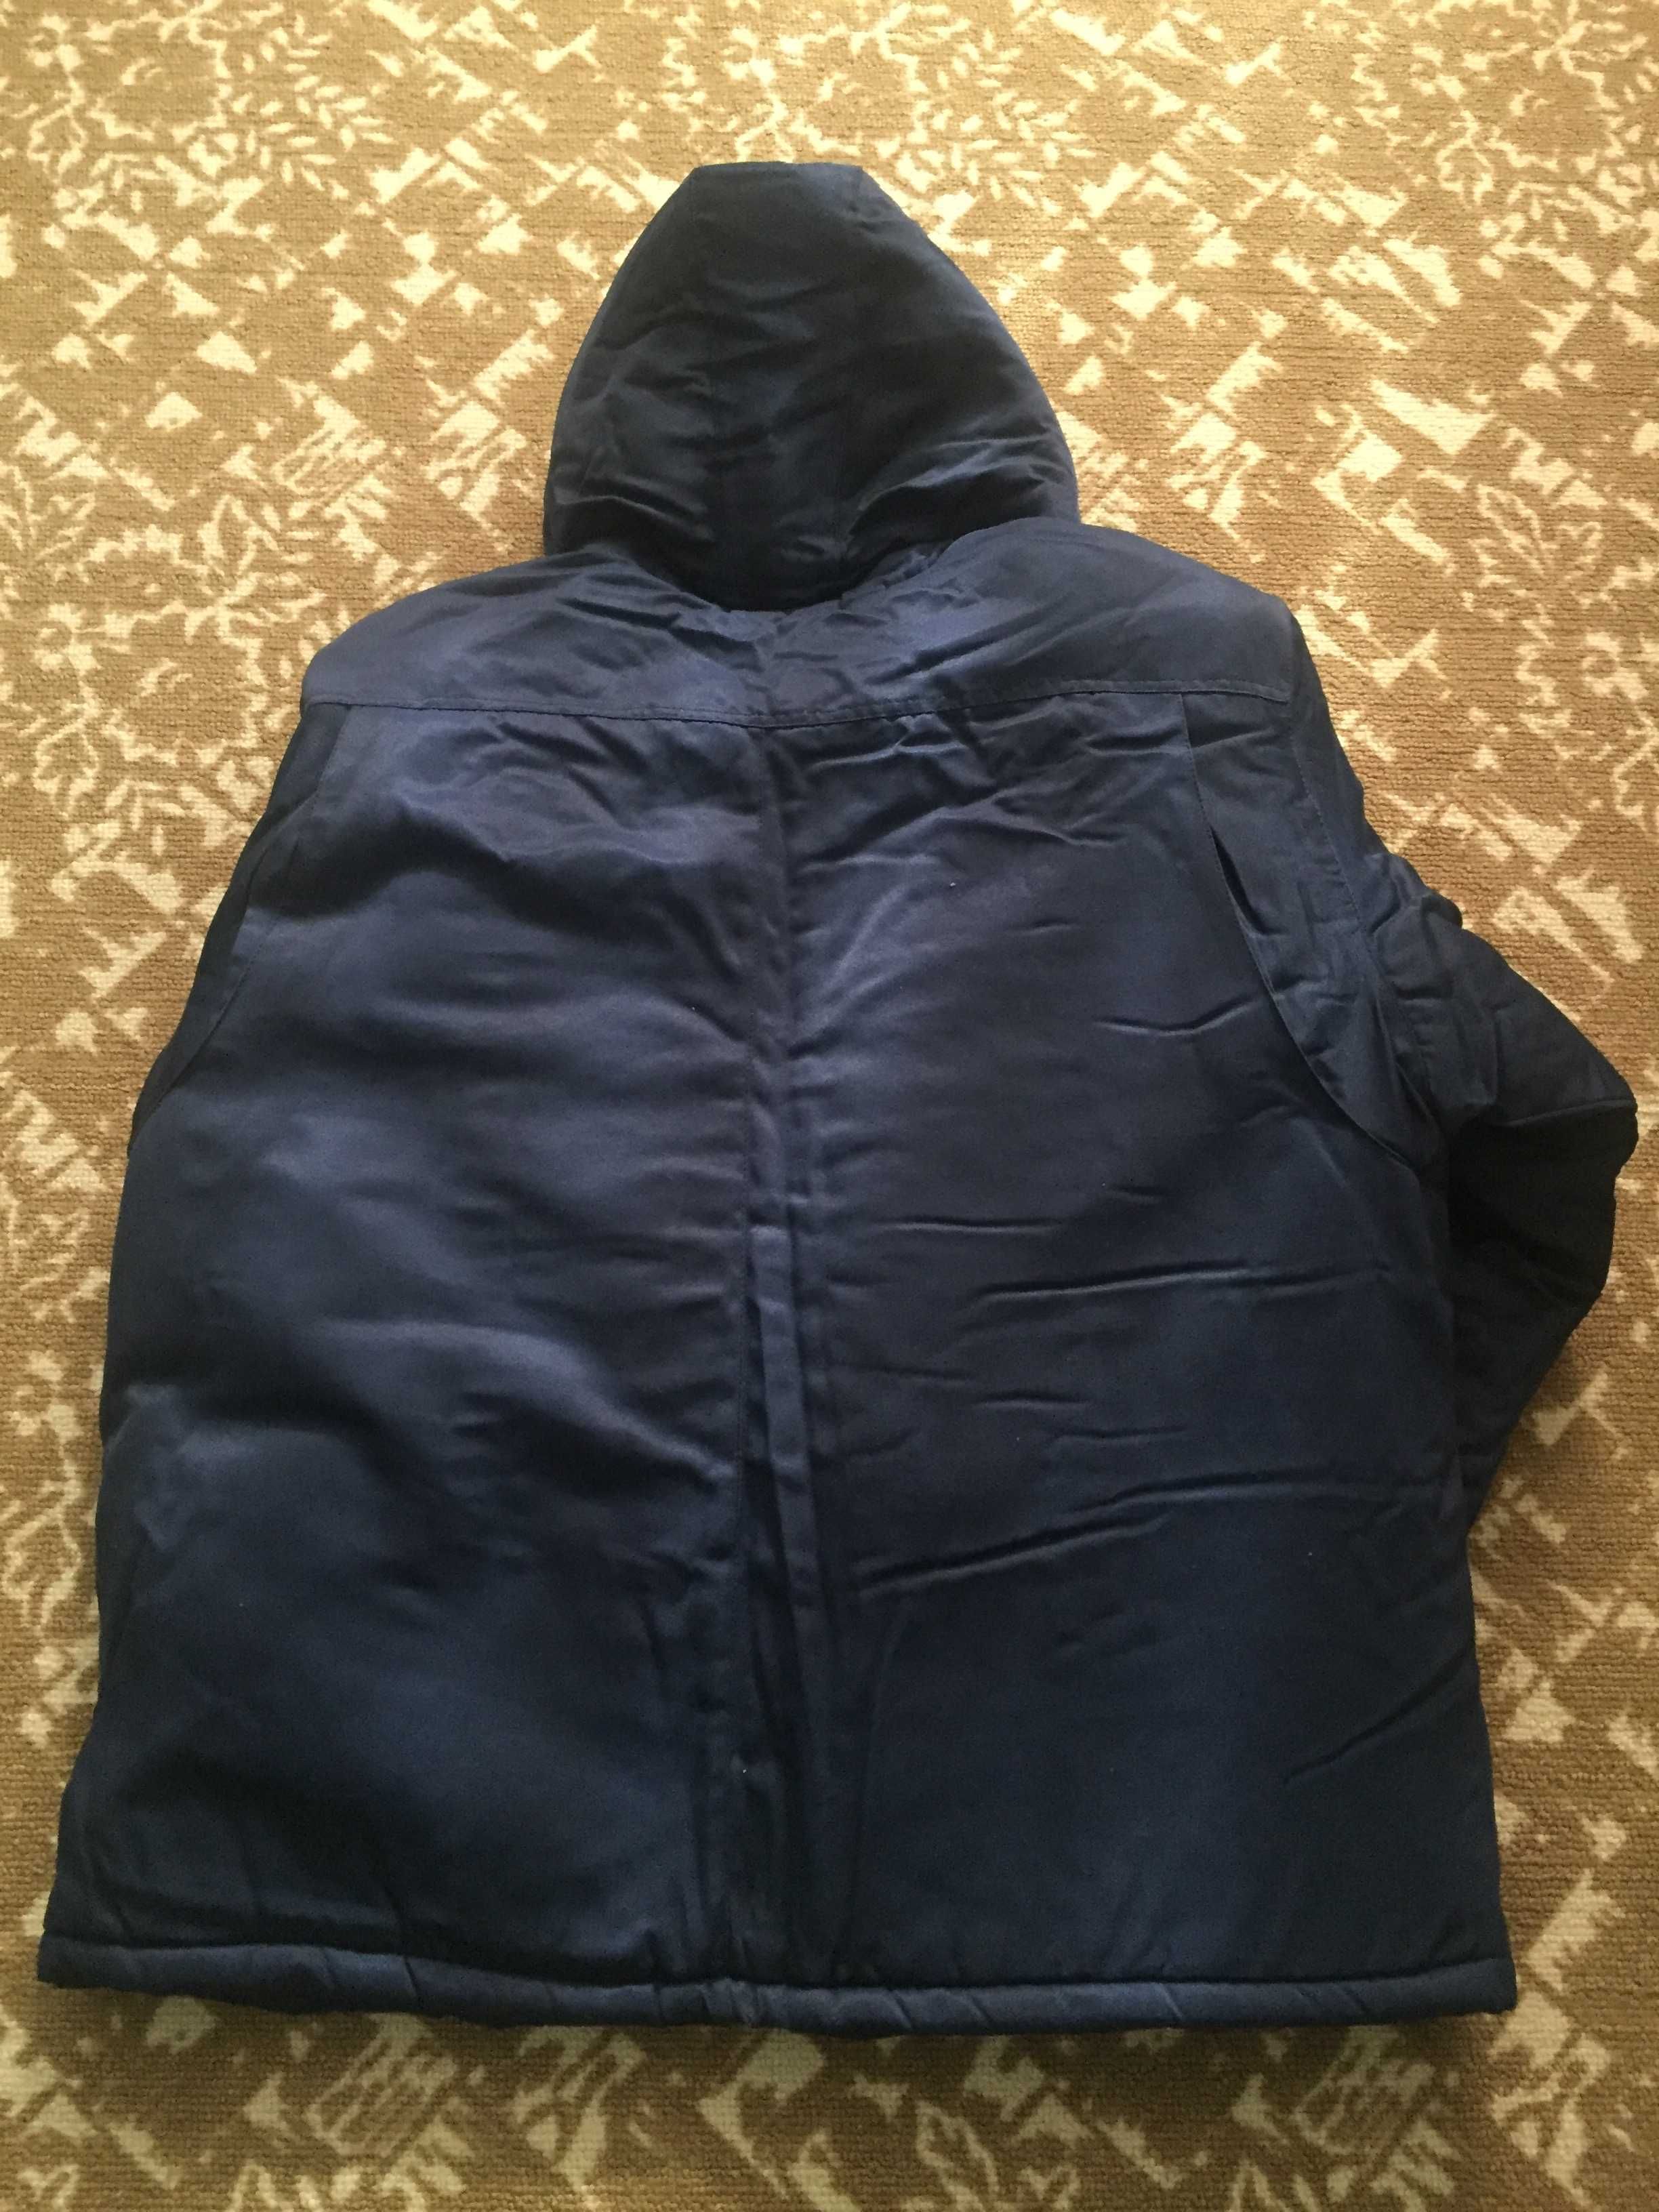 Куртка робоча (спецодяг) утеплена, розмір 60-62, ріст 182-188, нова